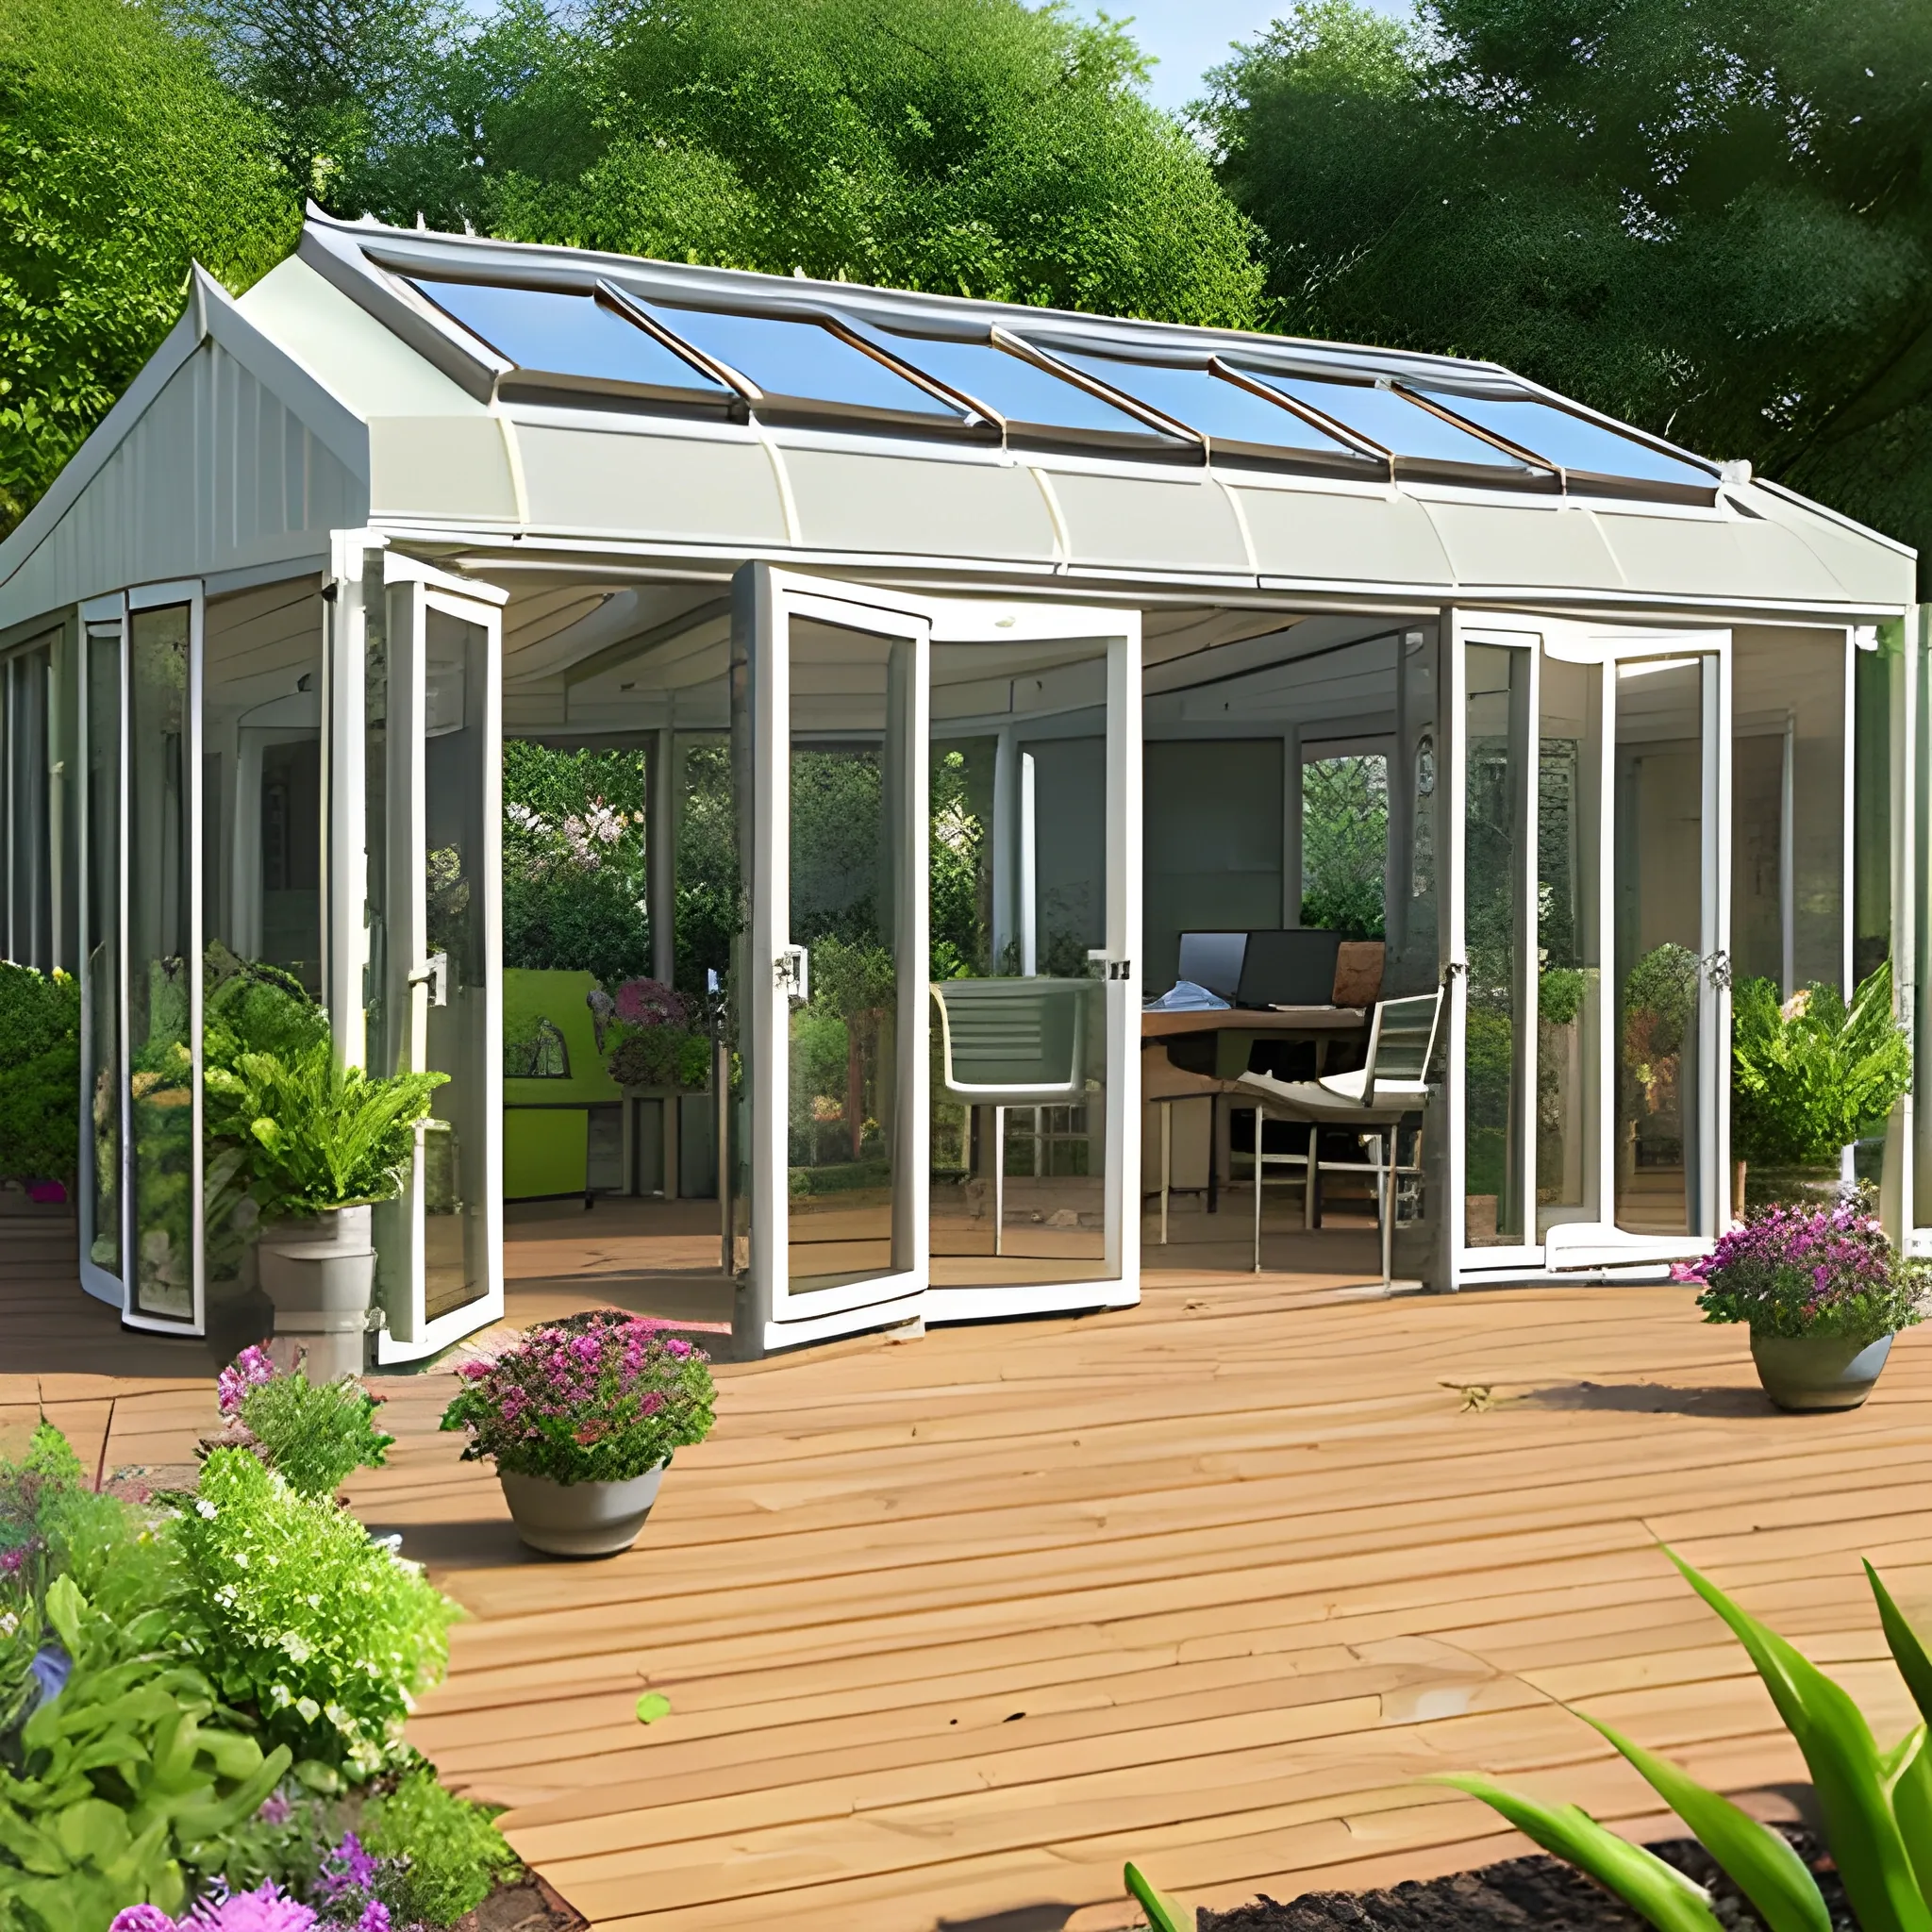 garden room, bi-folding doors, overhanging roof, decking, large pond, office desk and seating area, plants, flowers, sunshine, 3D